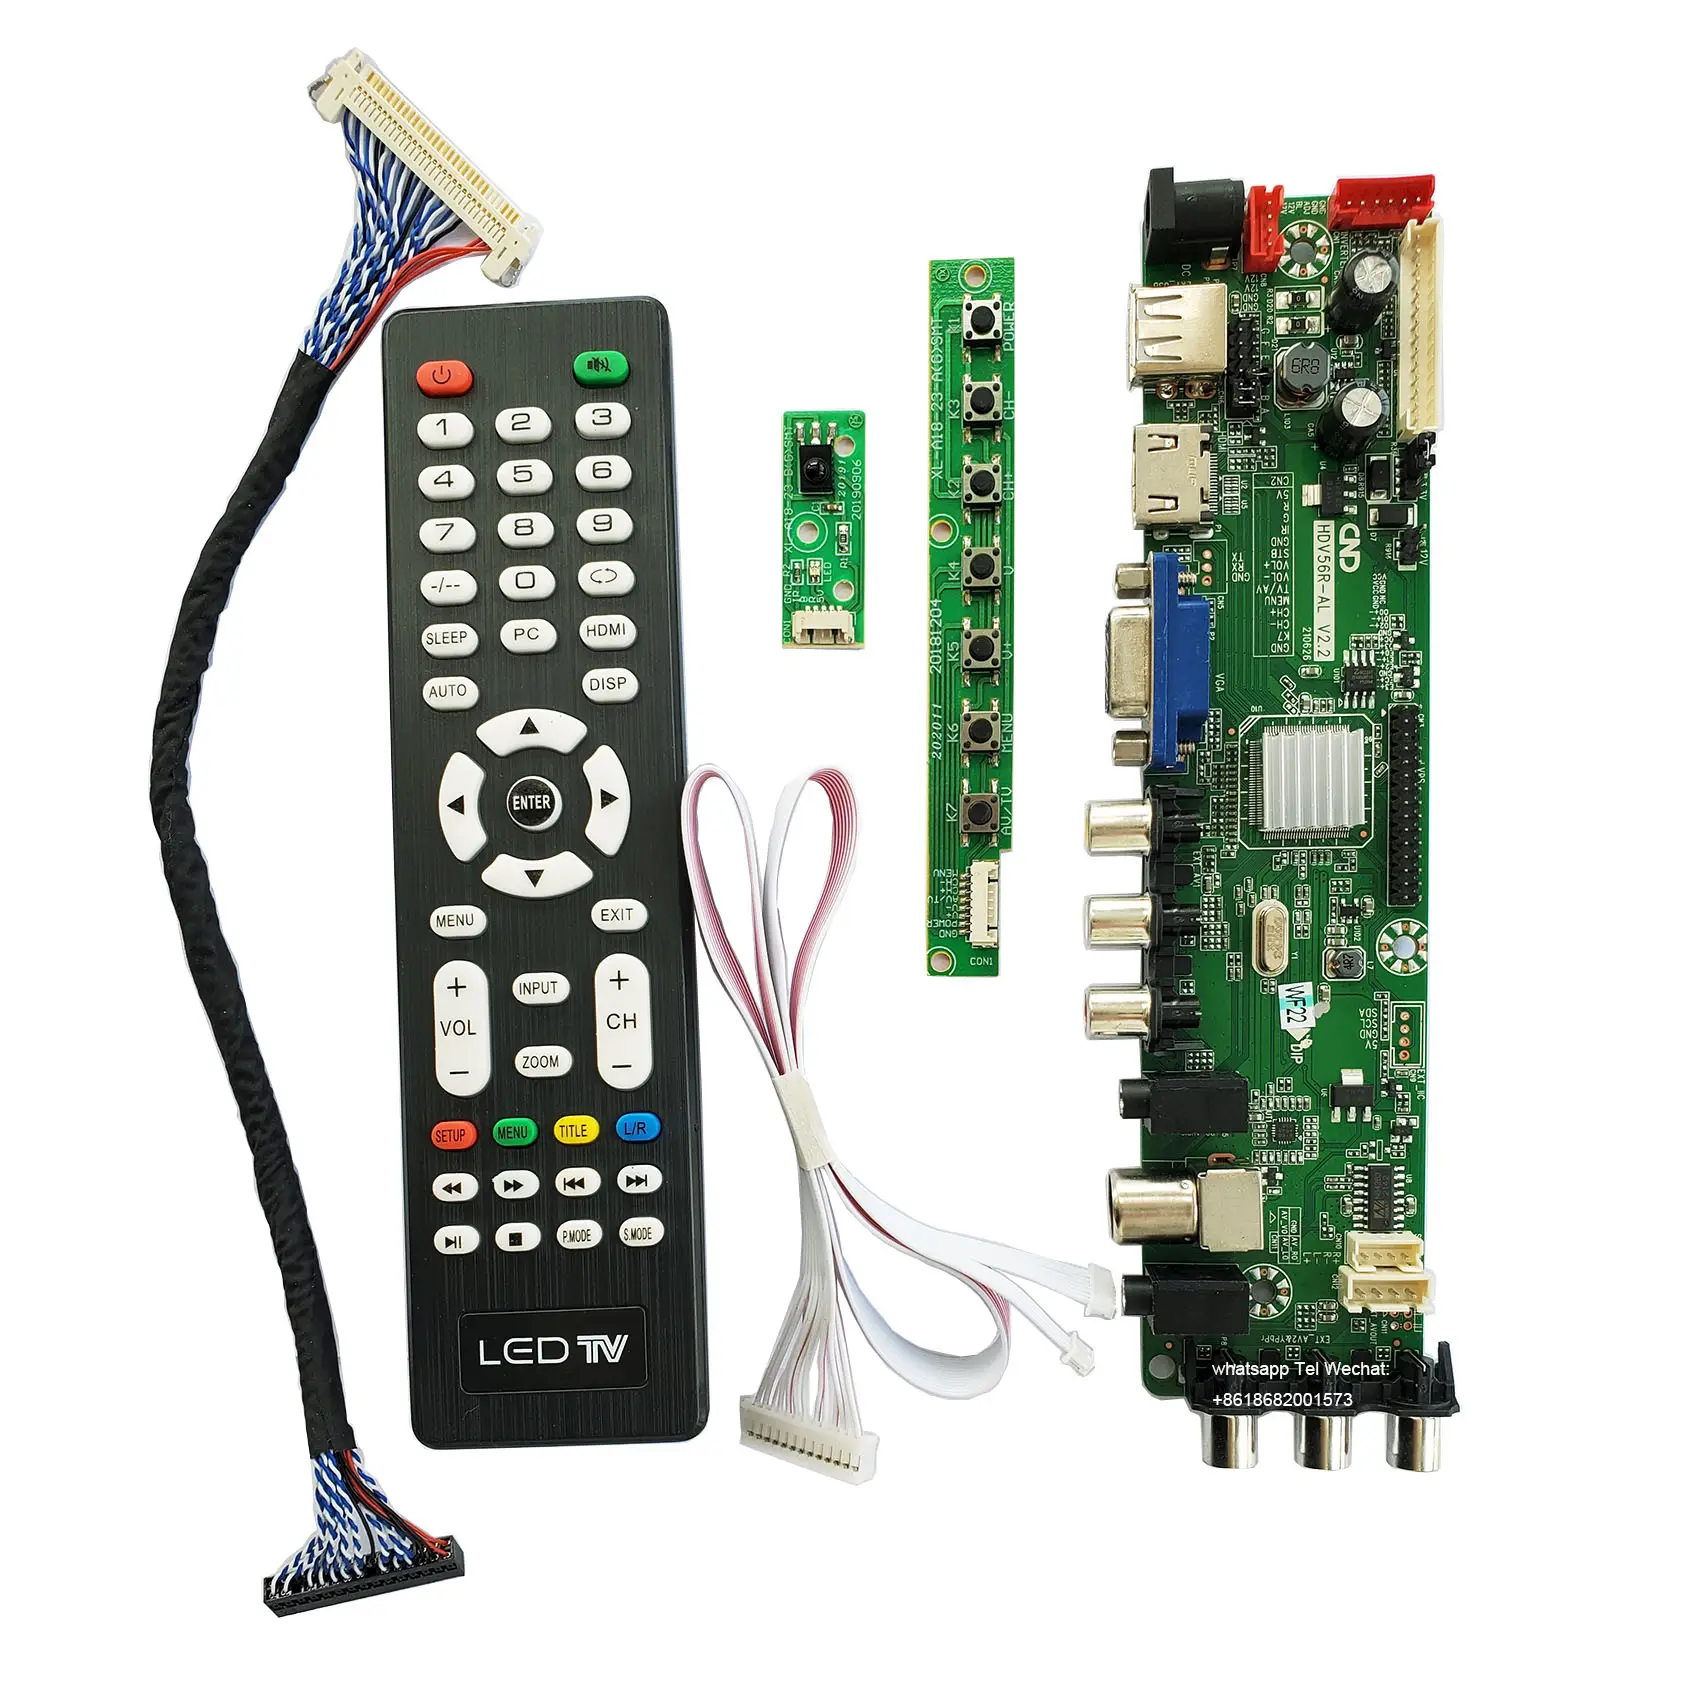 Kaliteli ve ucuz evrensel TV anakart HDV56R-AS TV kurulu LCD TV denetleyici sürücü panosu